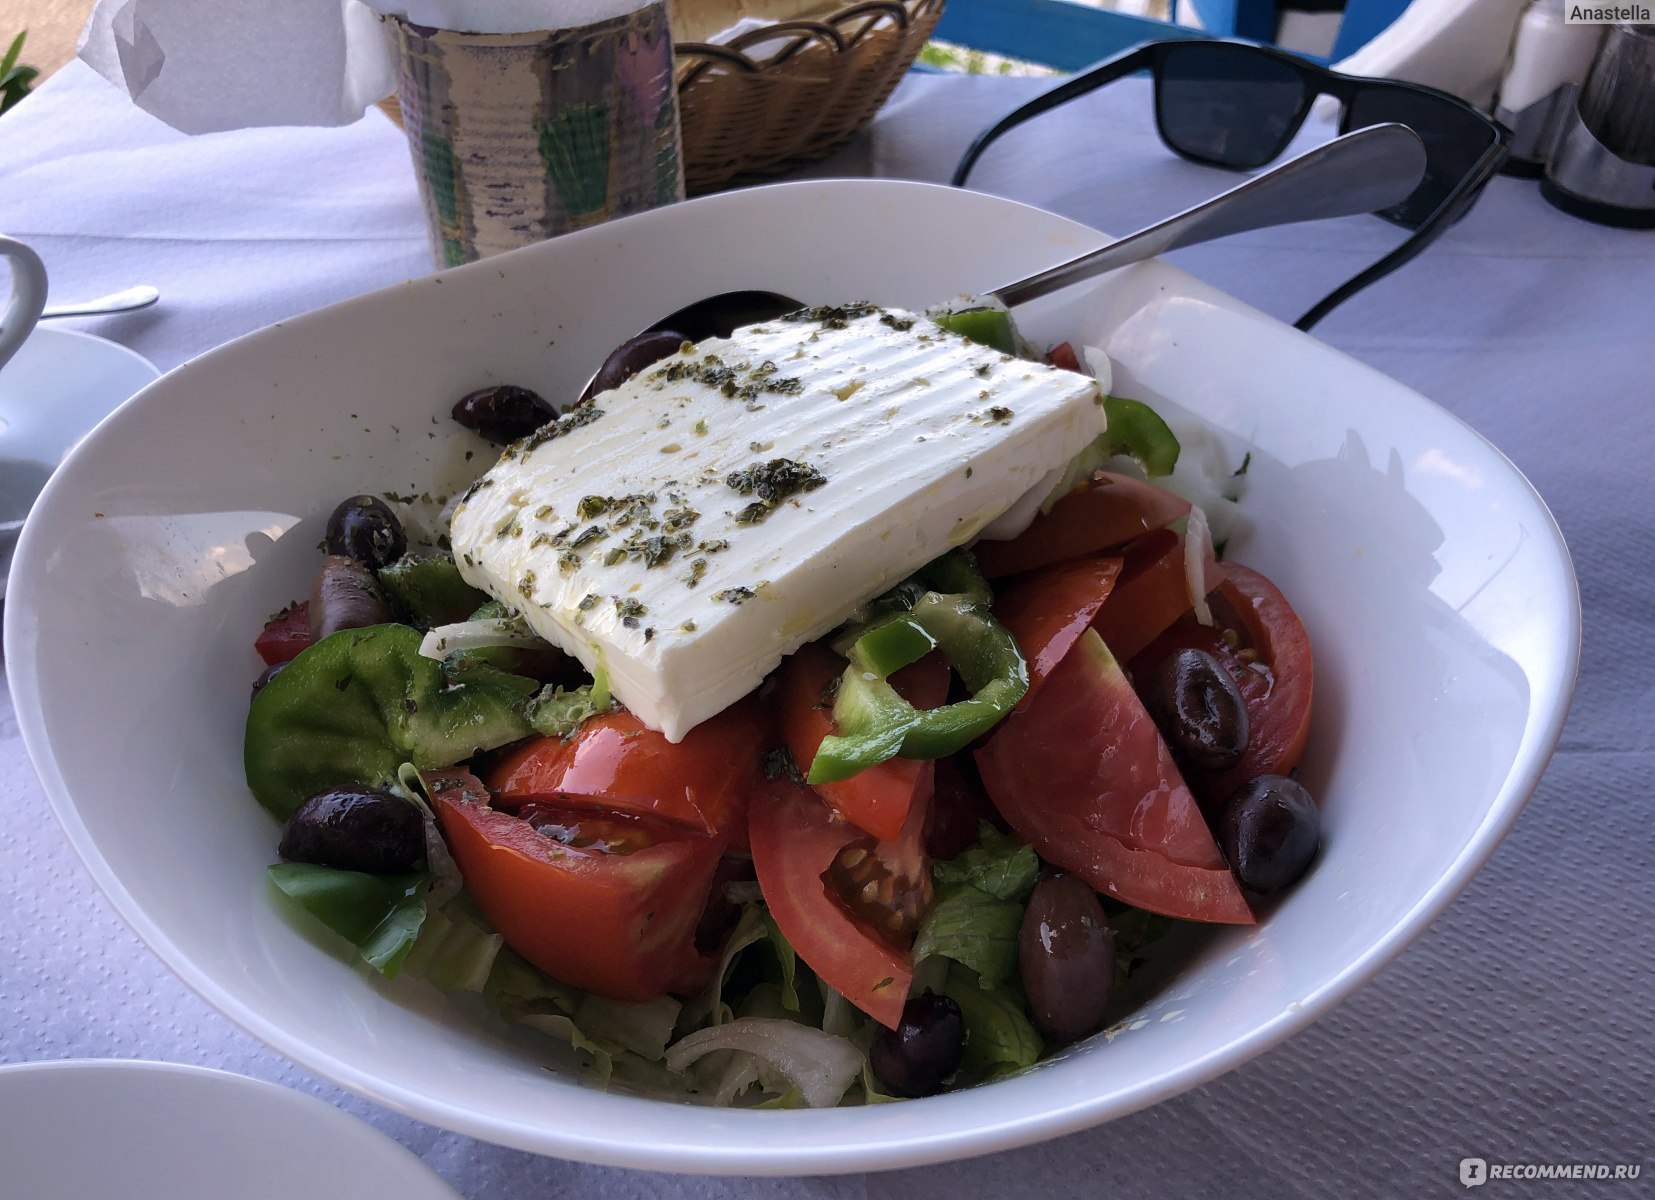 Настоящий греческий. Греческий салат в Греции. Греческий салат подача в Греции. Салата греческий остров Крит. Греческий салат Крит.